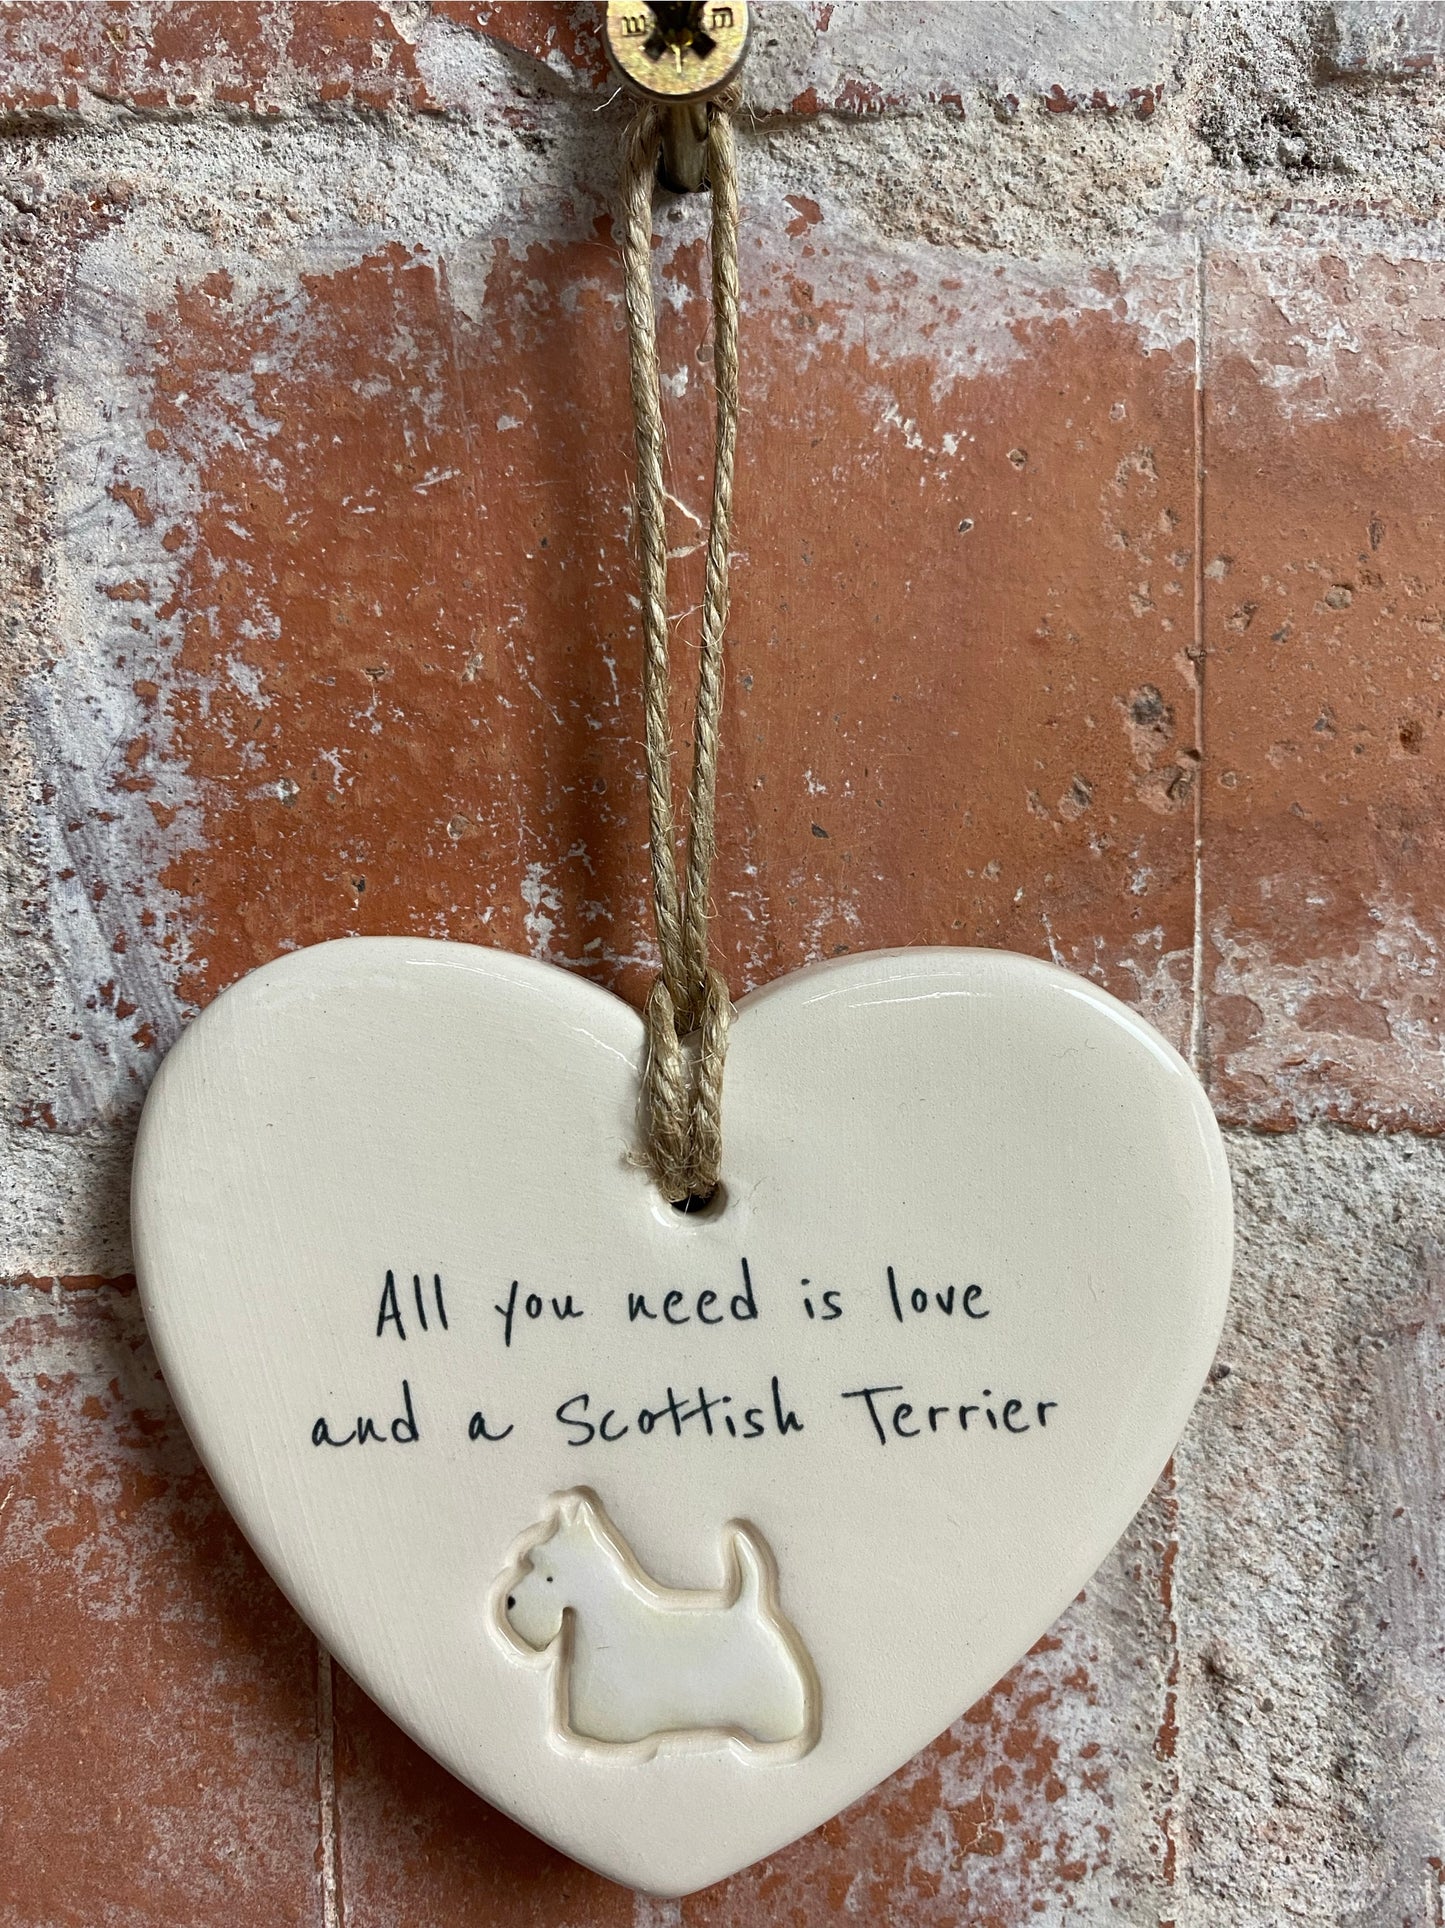 Scottish Terrier ceramic heart